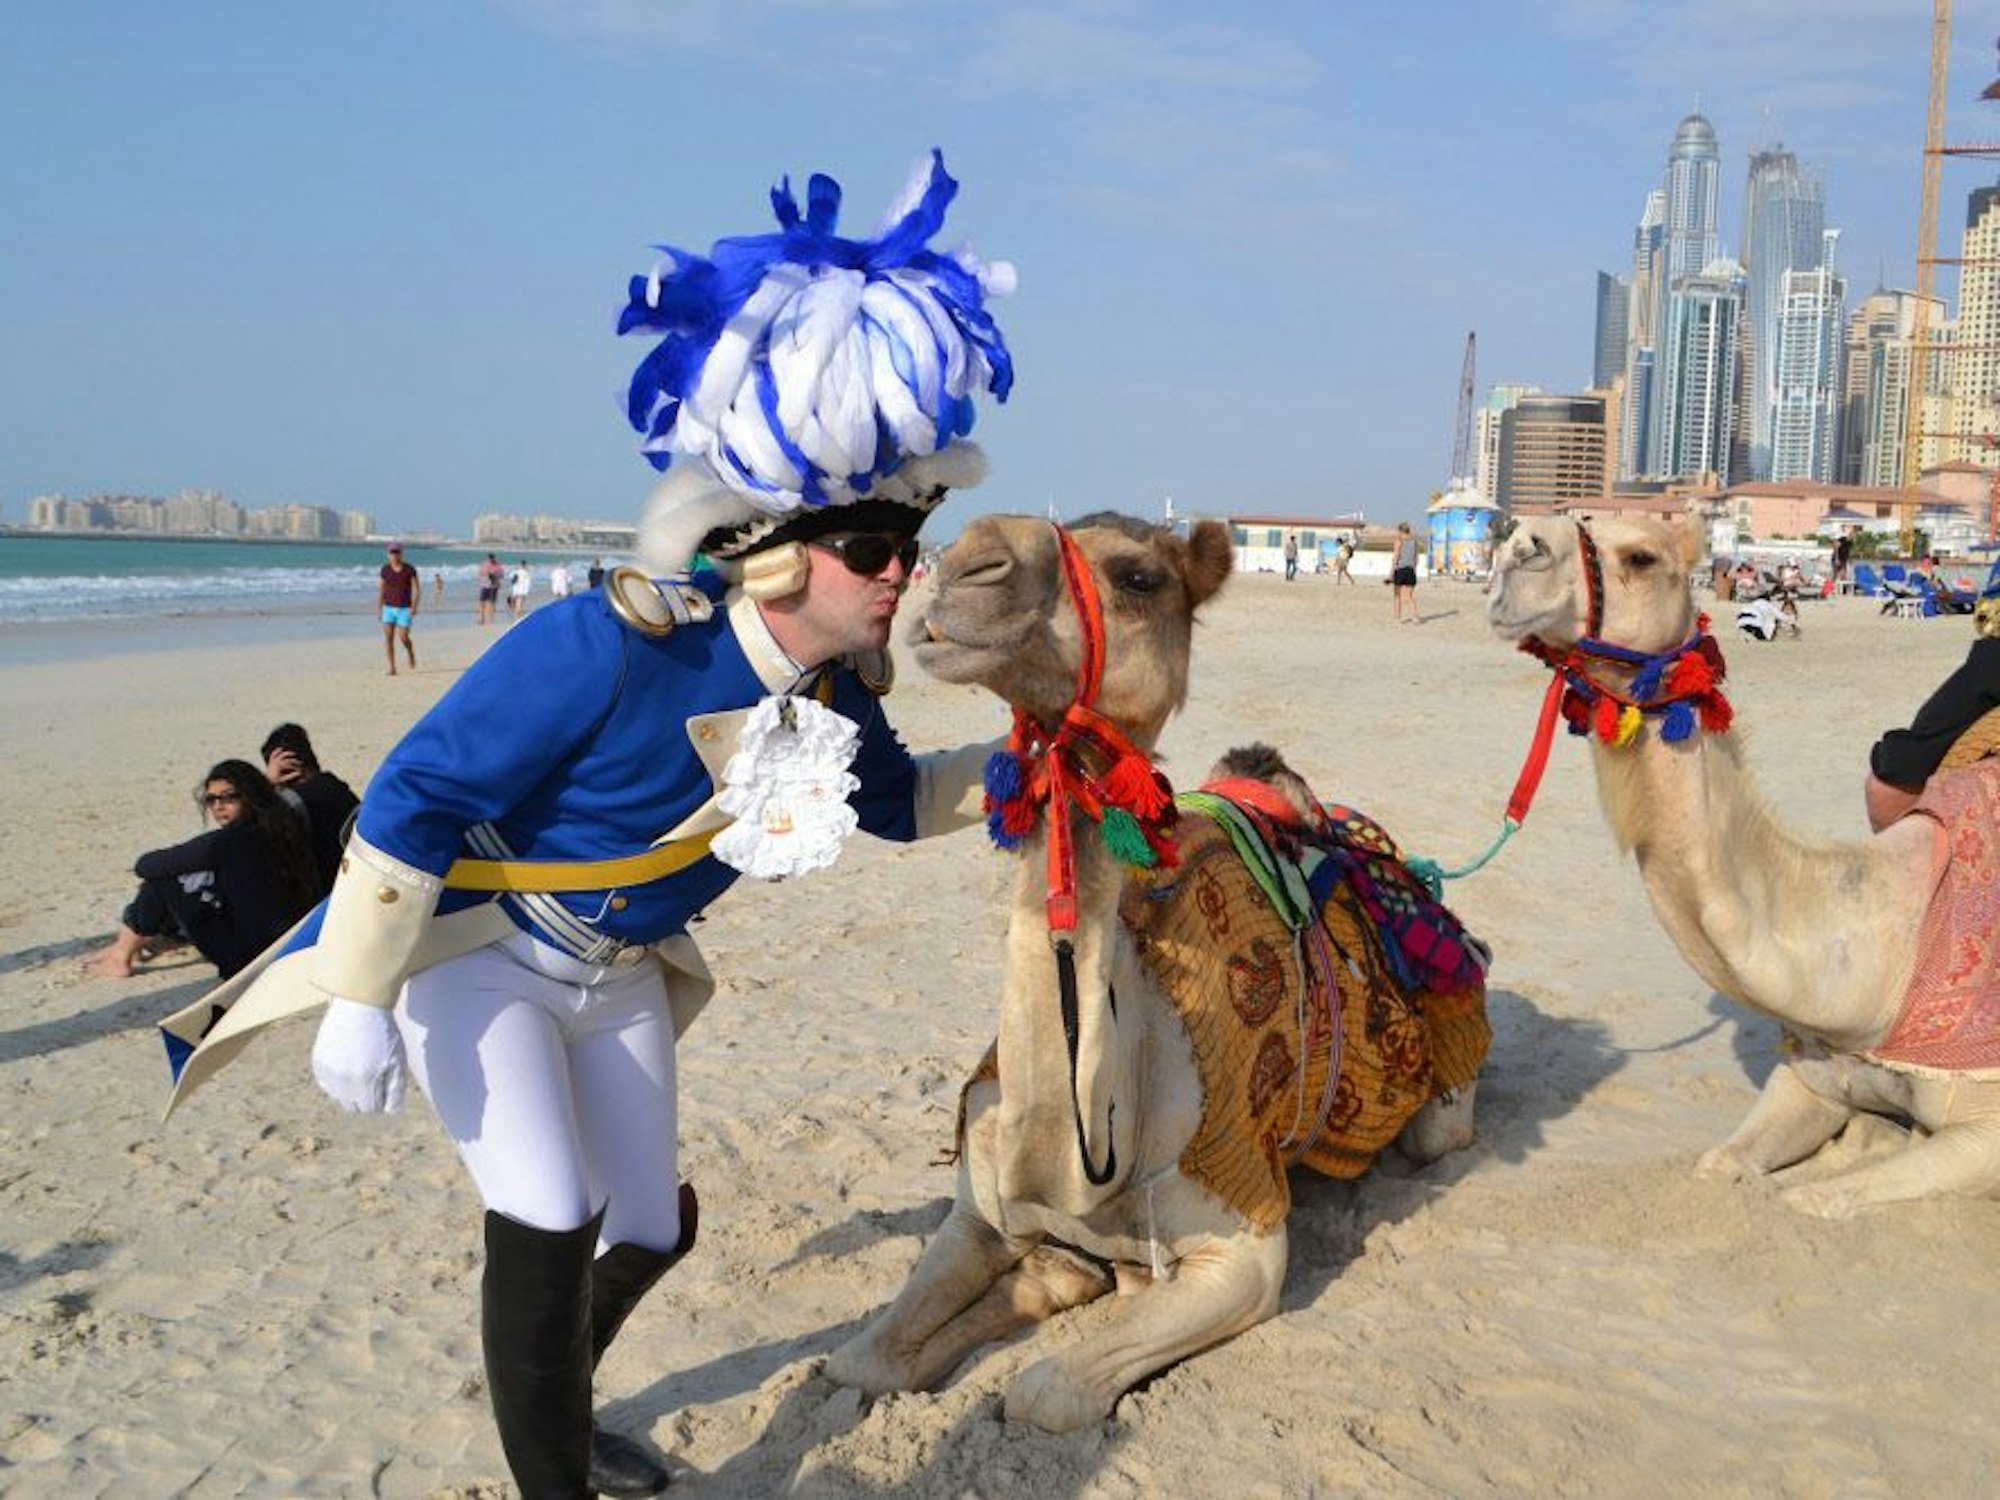 Ein kostümierter Karnevalist küsst ein Kamel an einem Strand